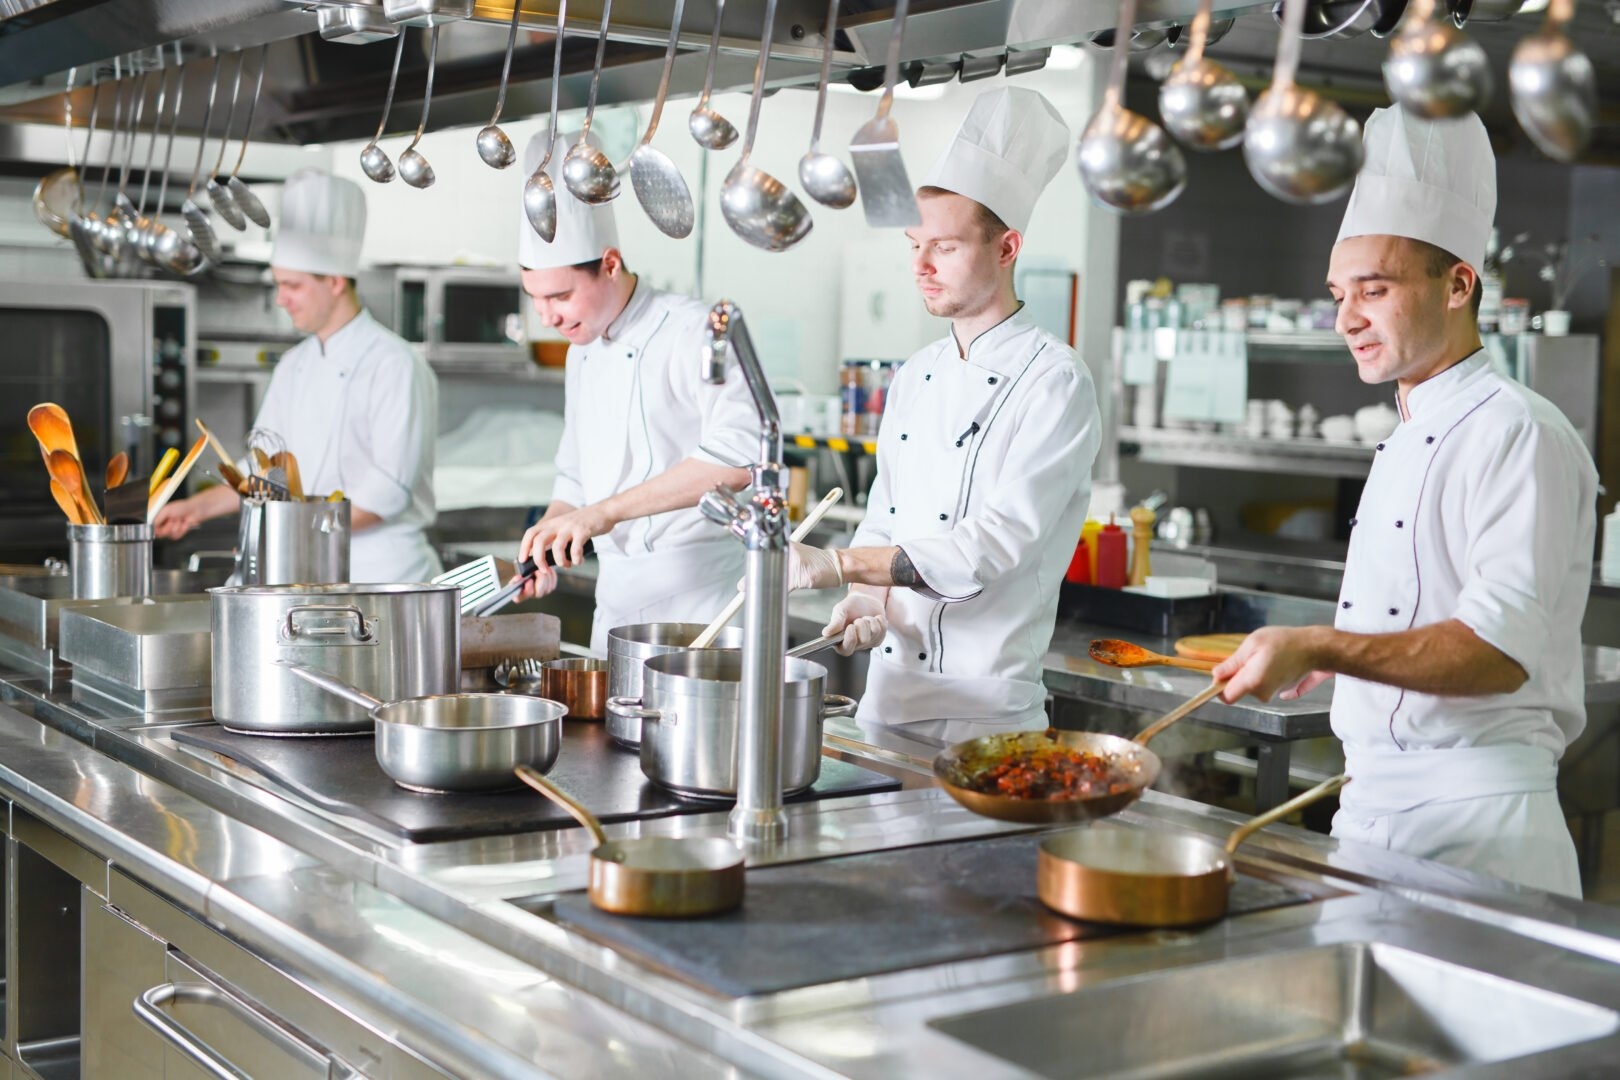 Pesquisa aponta potencial de novas vagas de trabalho no mercado de gastronomia